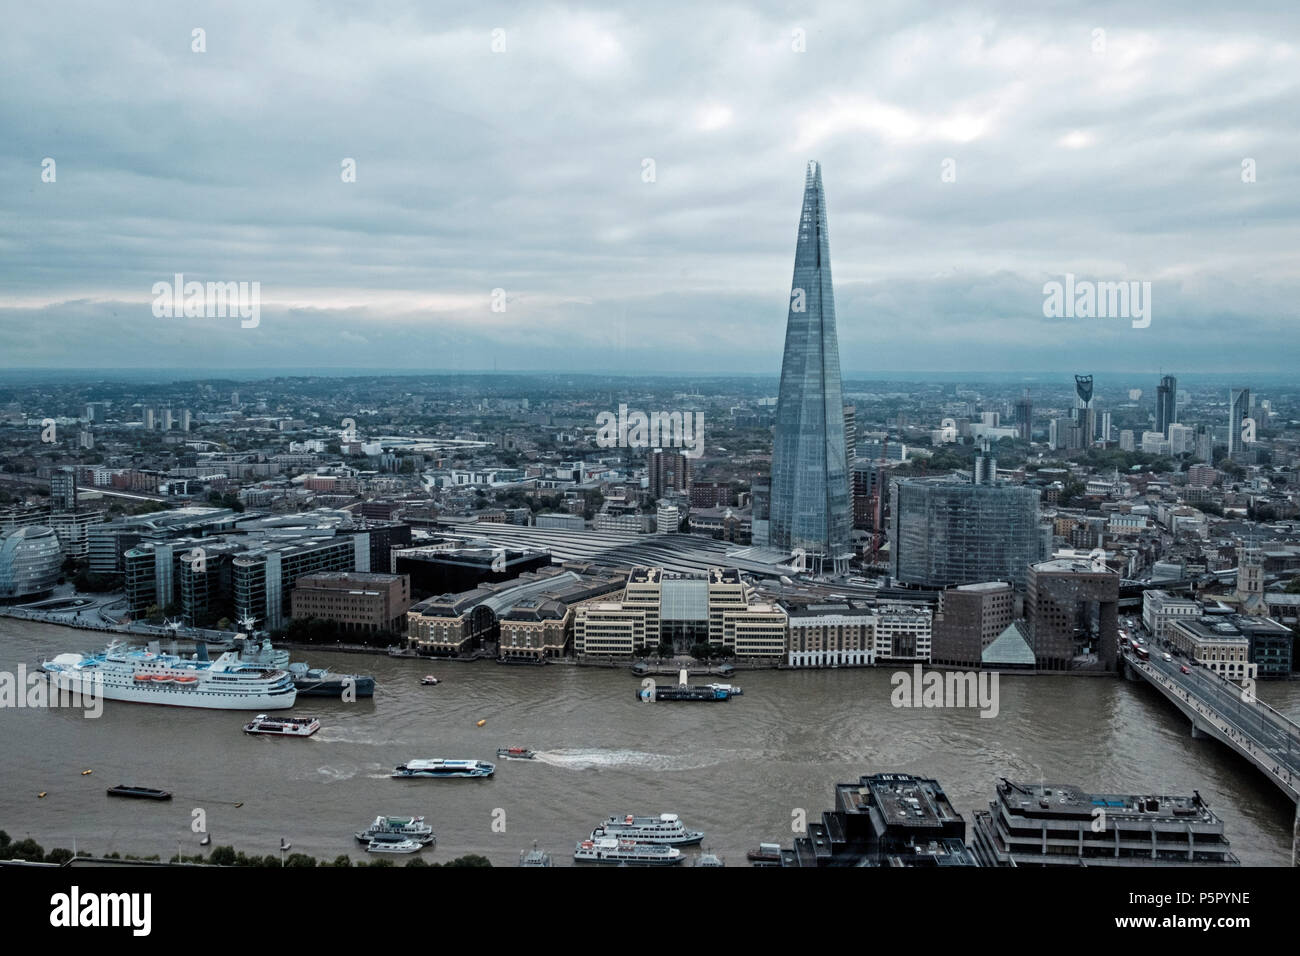 Luftaufnahme der Shard, umliegenden Londoner Gebäude, kommerzielle Wolkenkratzer und die Themse. Bewölkter Himmel. Drucken Raum. Boote auf dem Fluss. Sep 2017 Stockfoto